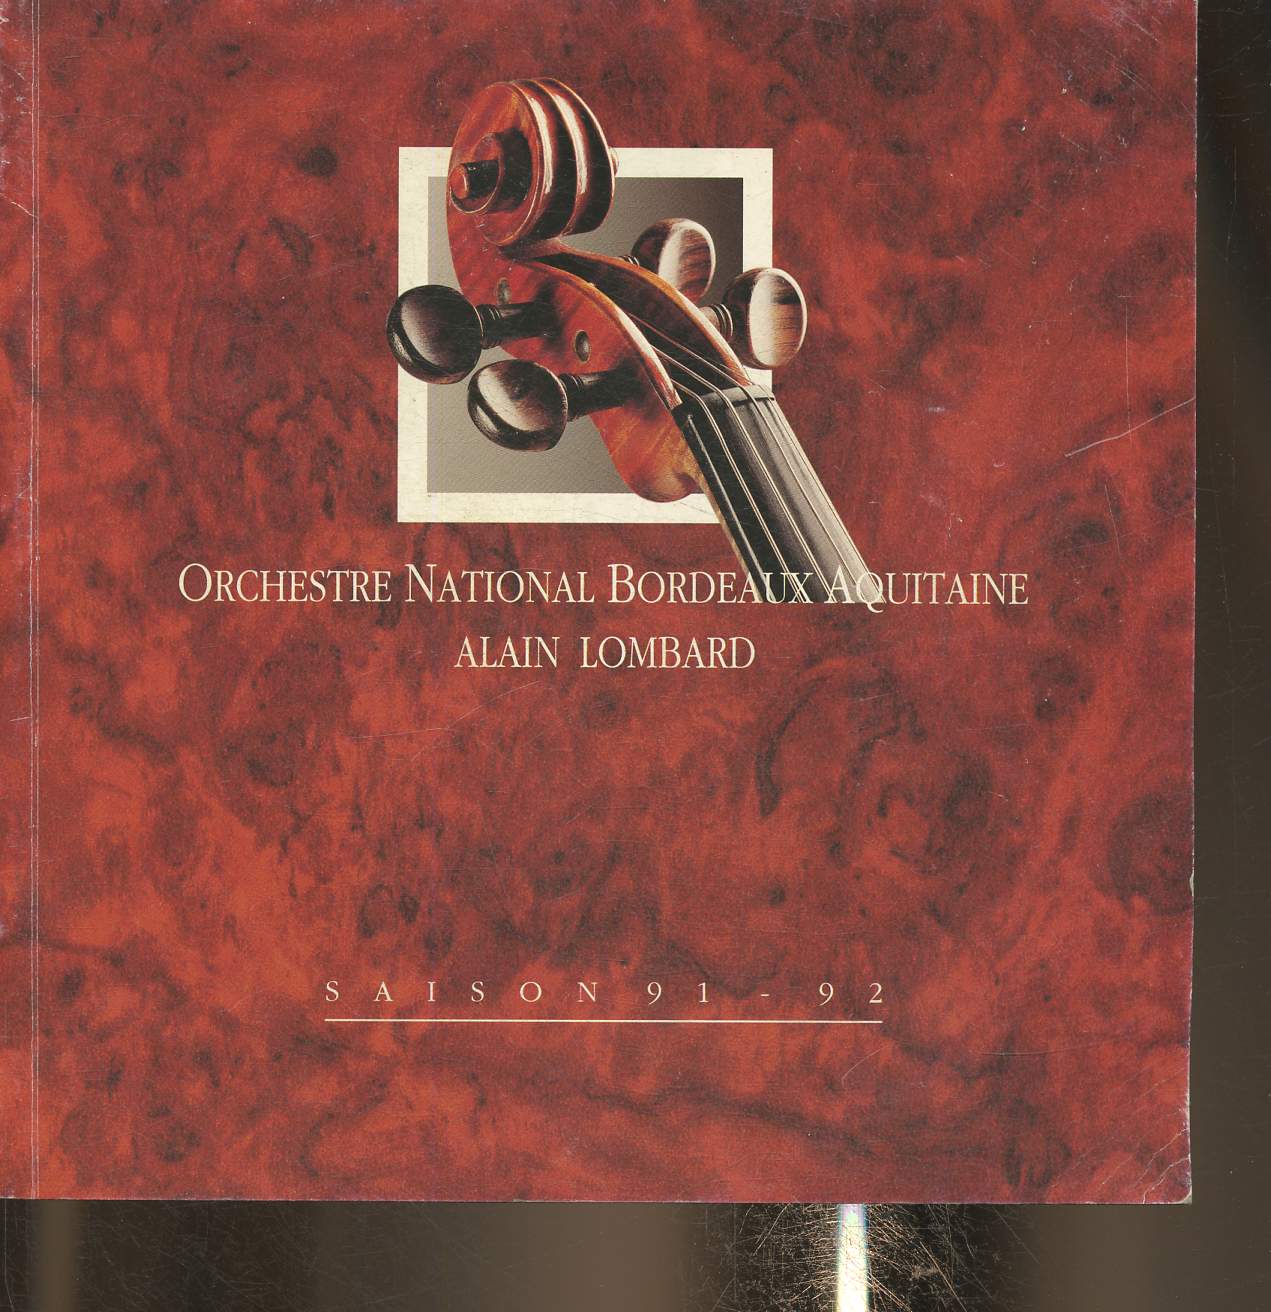 Programme de l'Orchestre national de Bordeaux Aquitaine saison 1991-1992